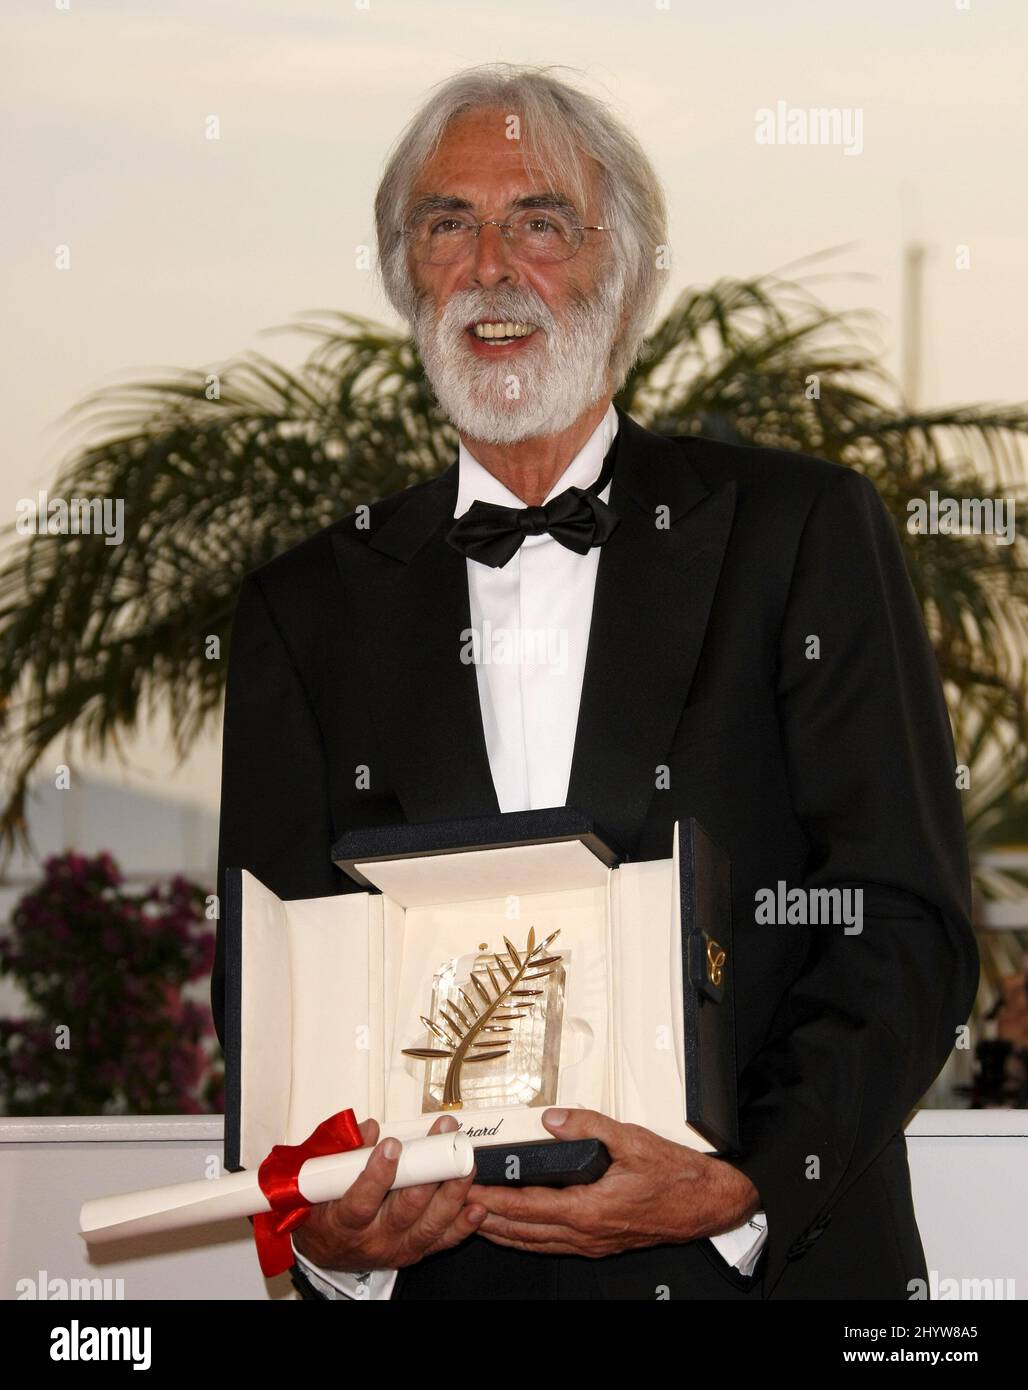 Il regista austriaco Michael Haneke in posa con il premio Palme d'Or ha ricevuto per il film "The White Ribbon", in una telefonata dopo la cerimonia di premiazione, durante il festival internazionale del cinema 62nd a Cannes. Foto Stock